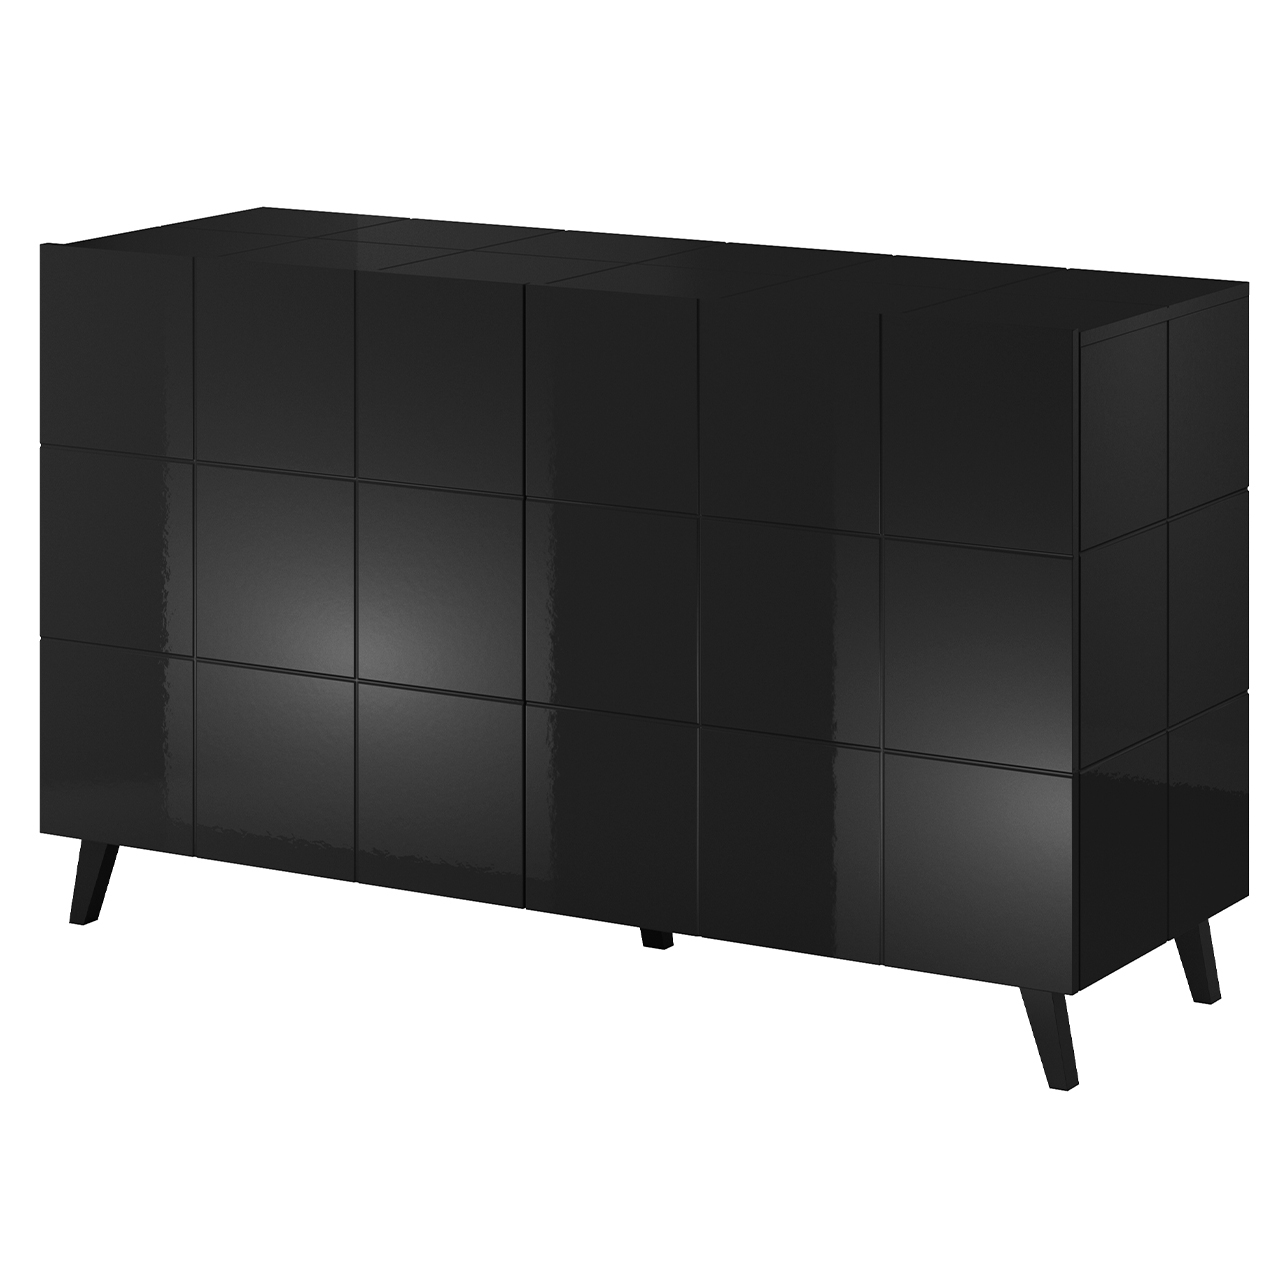 Storage cabinet REJA 2D black gloss